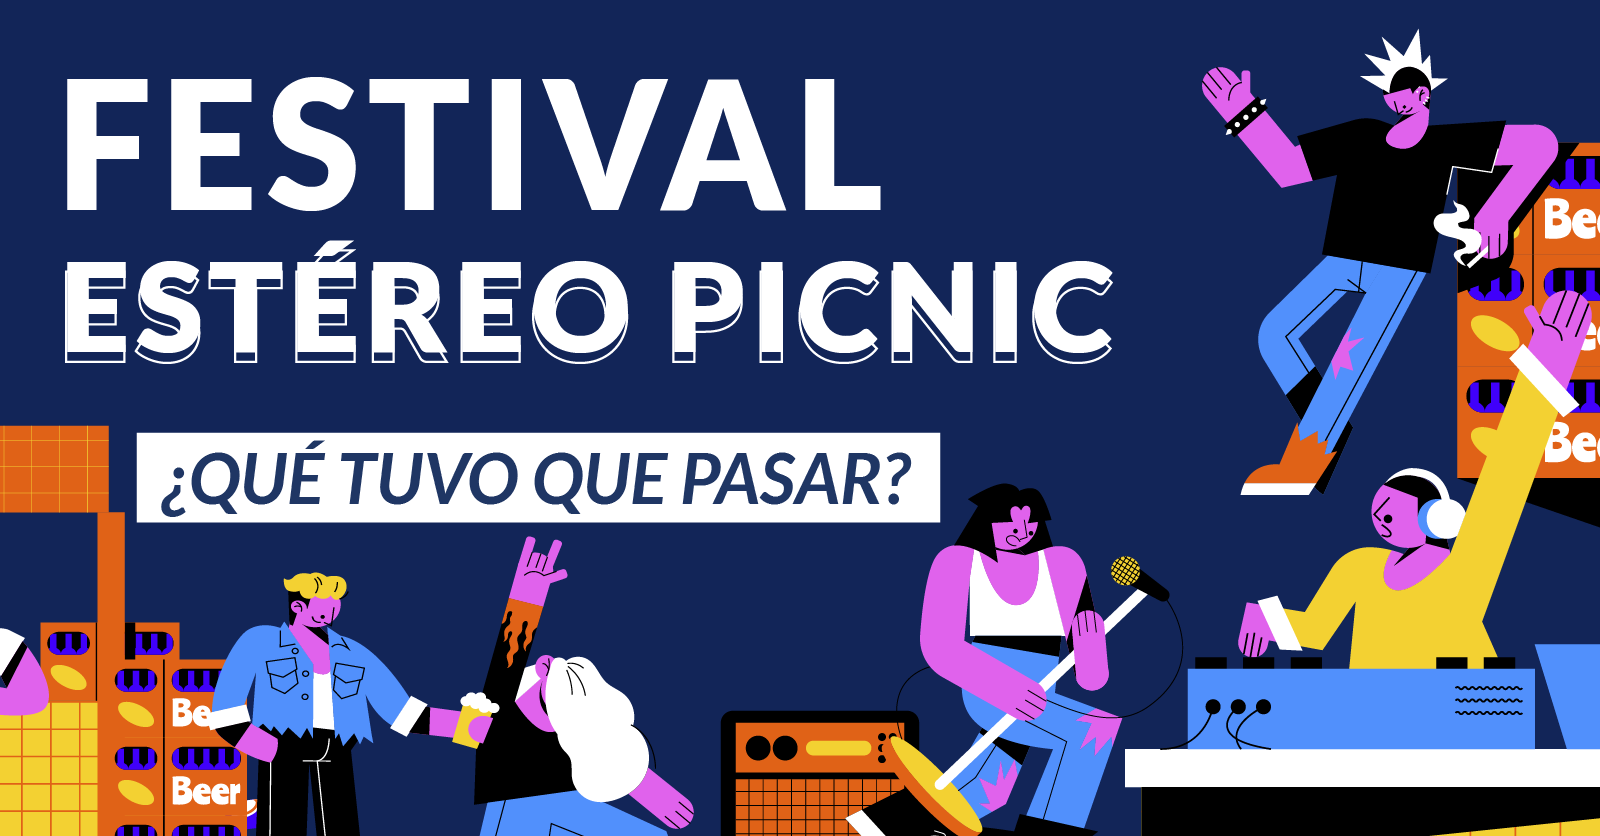 Festival estereo picnic